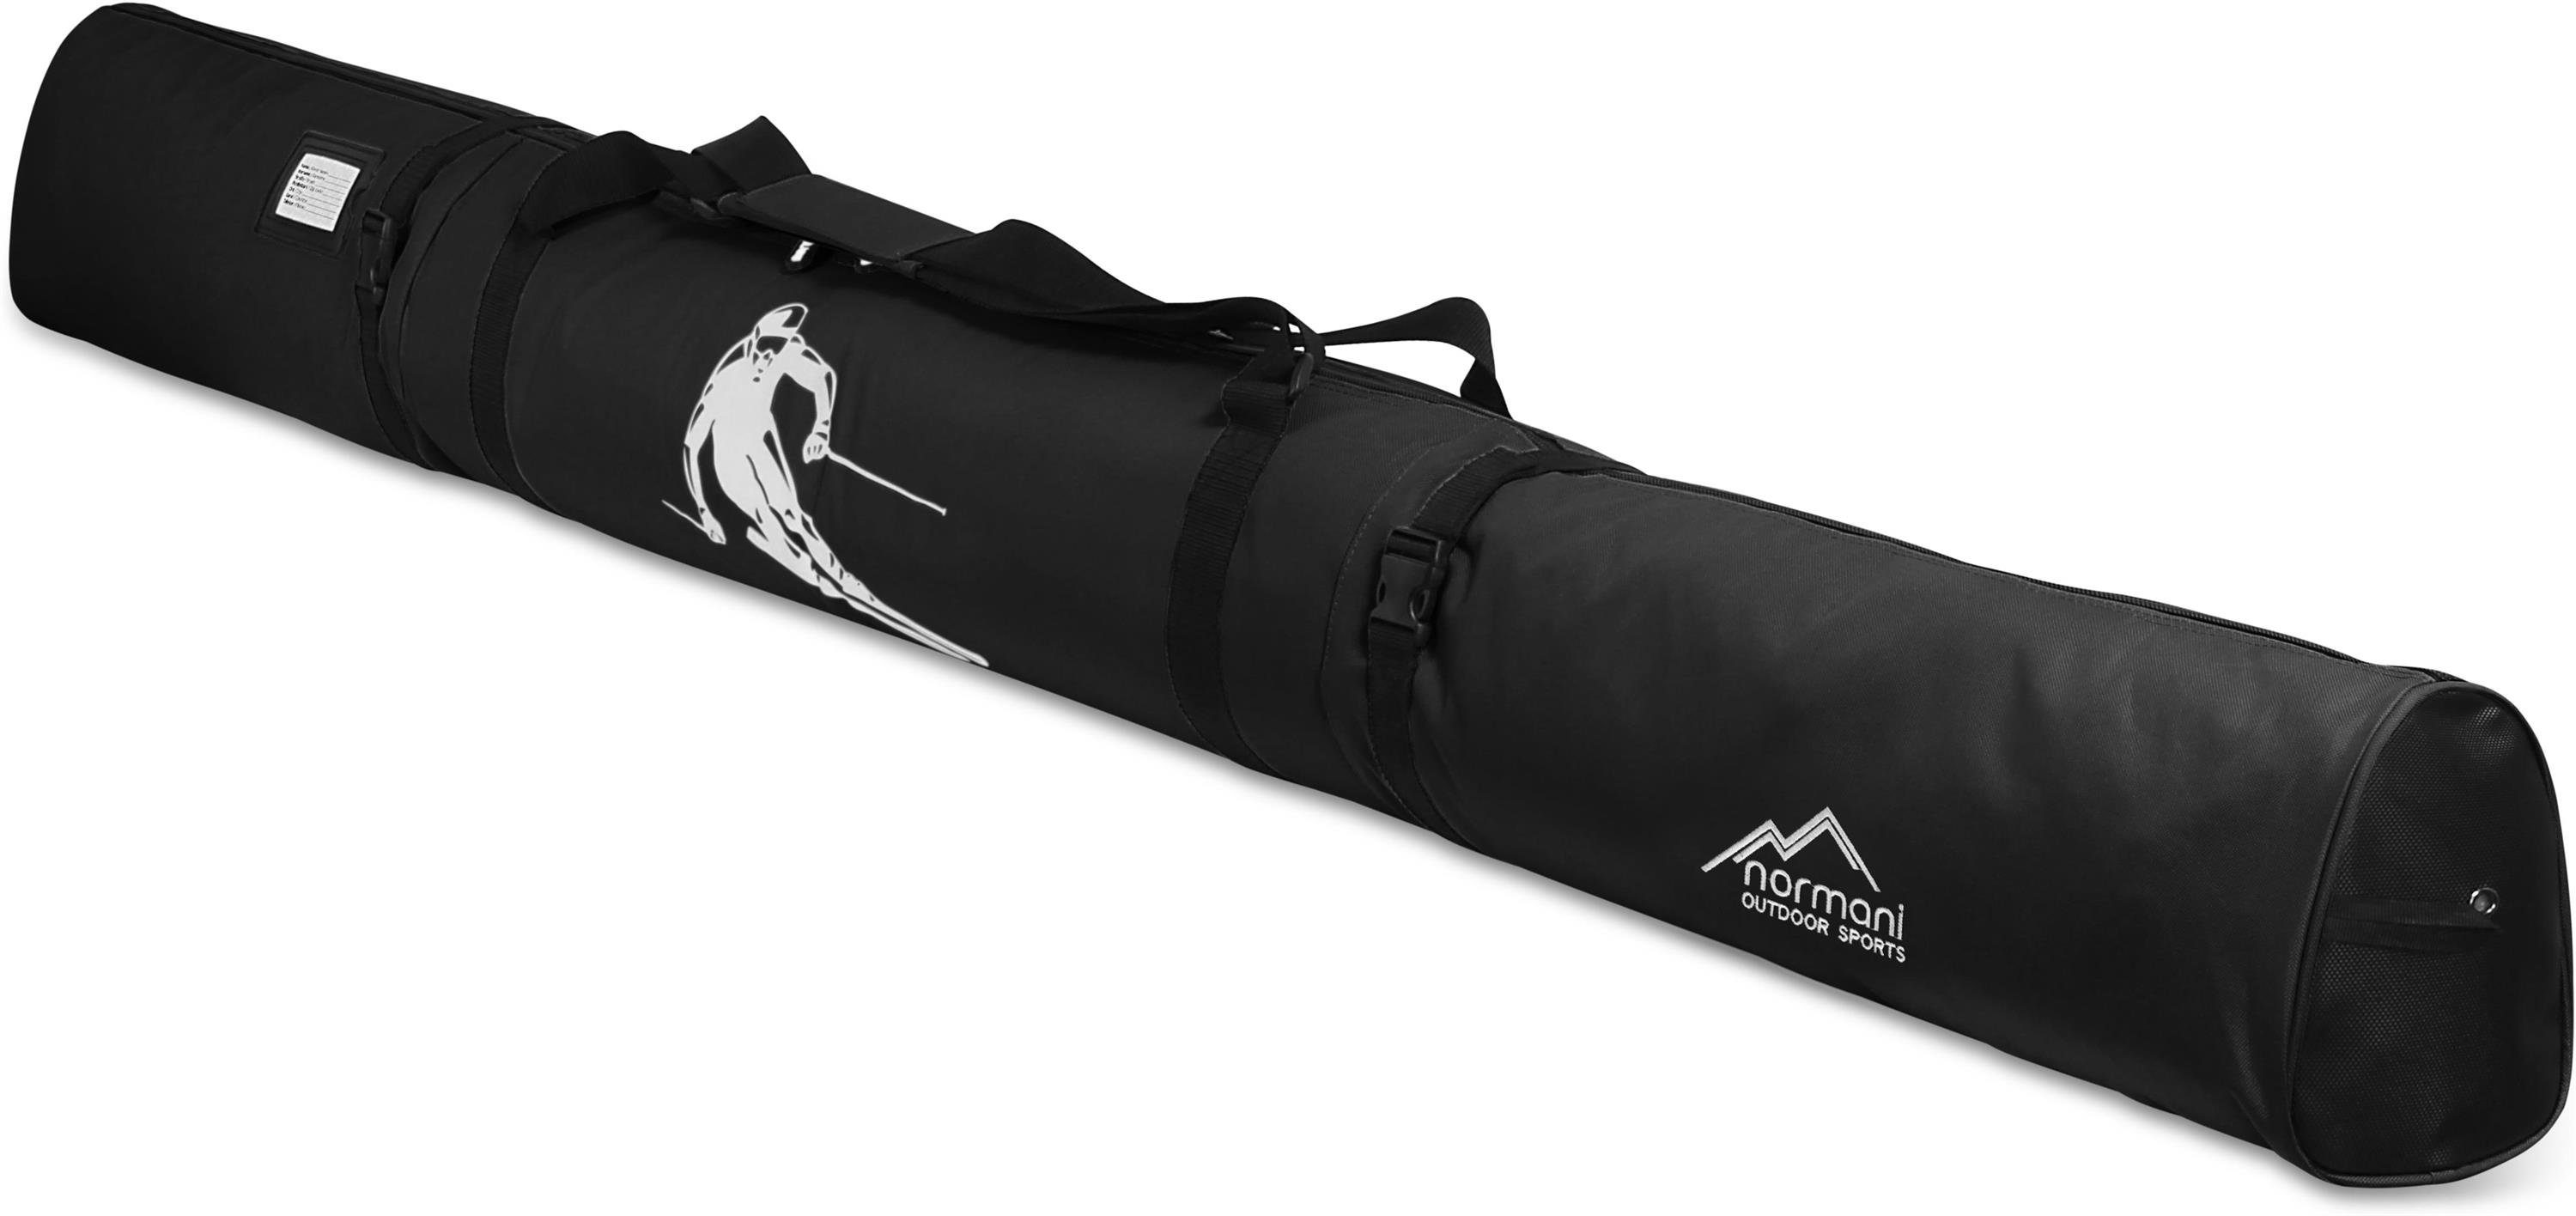 normani Sporttasche Skitasche Alpine Run 200, Skisack - Skitasche für Skier und Skistöcke Transporttasche Aufbewahrungstasche Schwarz